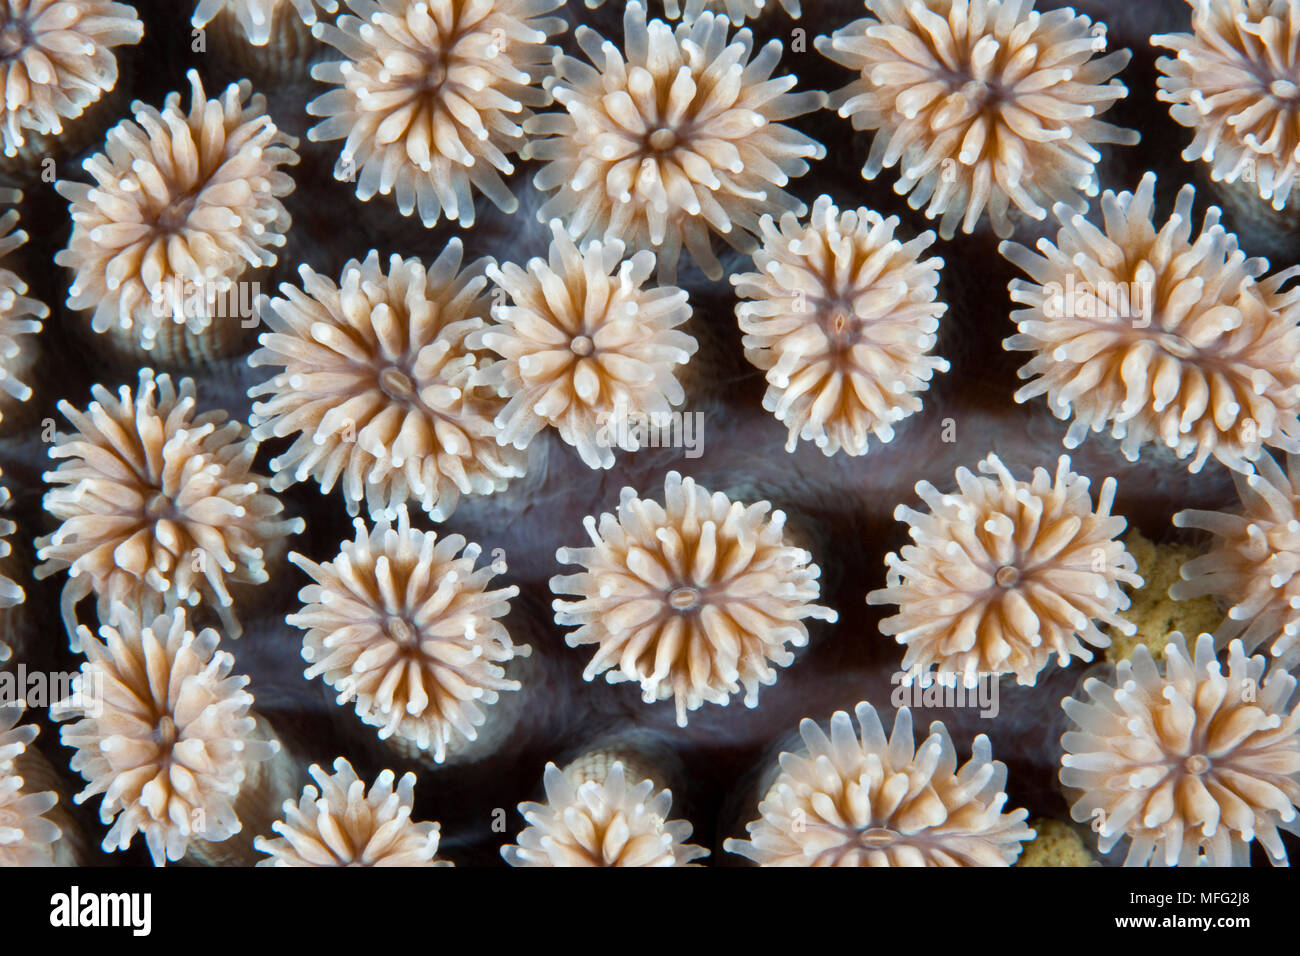 Hard coral colonies, Galaxea fascicularis, Halmahera, Moluccas Sea, Indonesia, Pacific Ocean Stock Photo